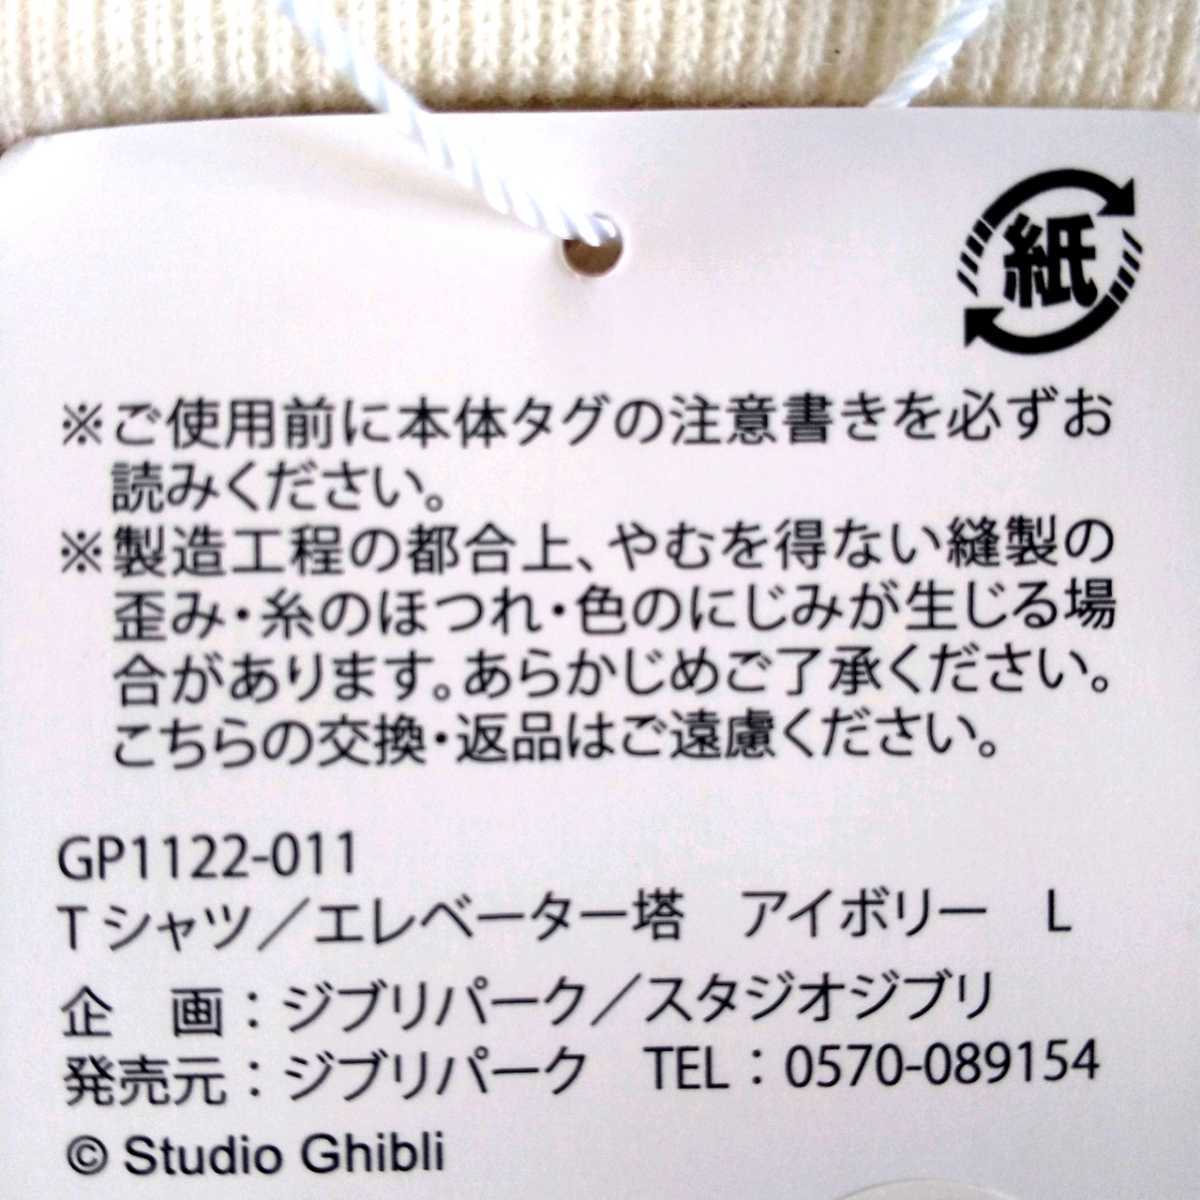 [ бесплатная доставка ] Ghibli park ограниченный товар лифт . футболка слоновая кость 